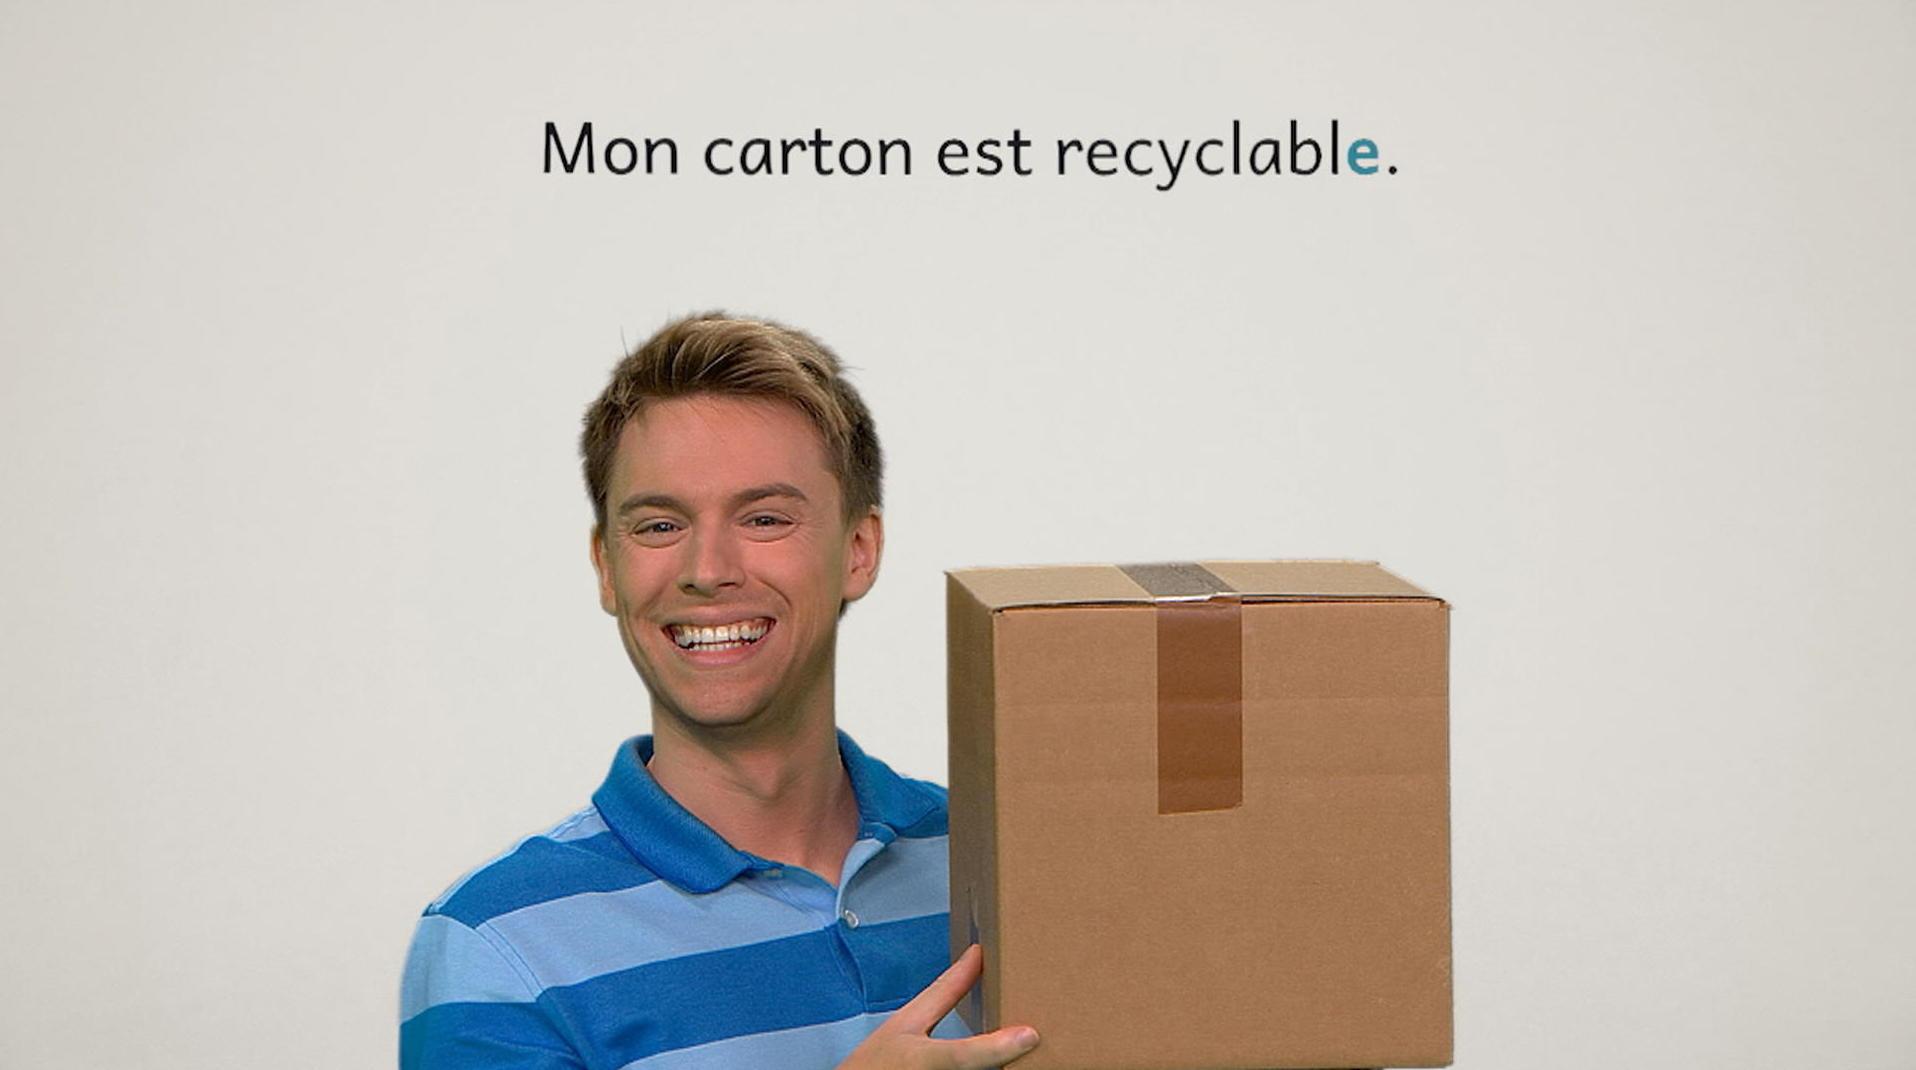 Recyclable, recyclable, recyclables